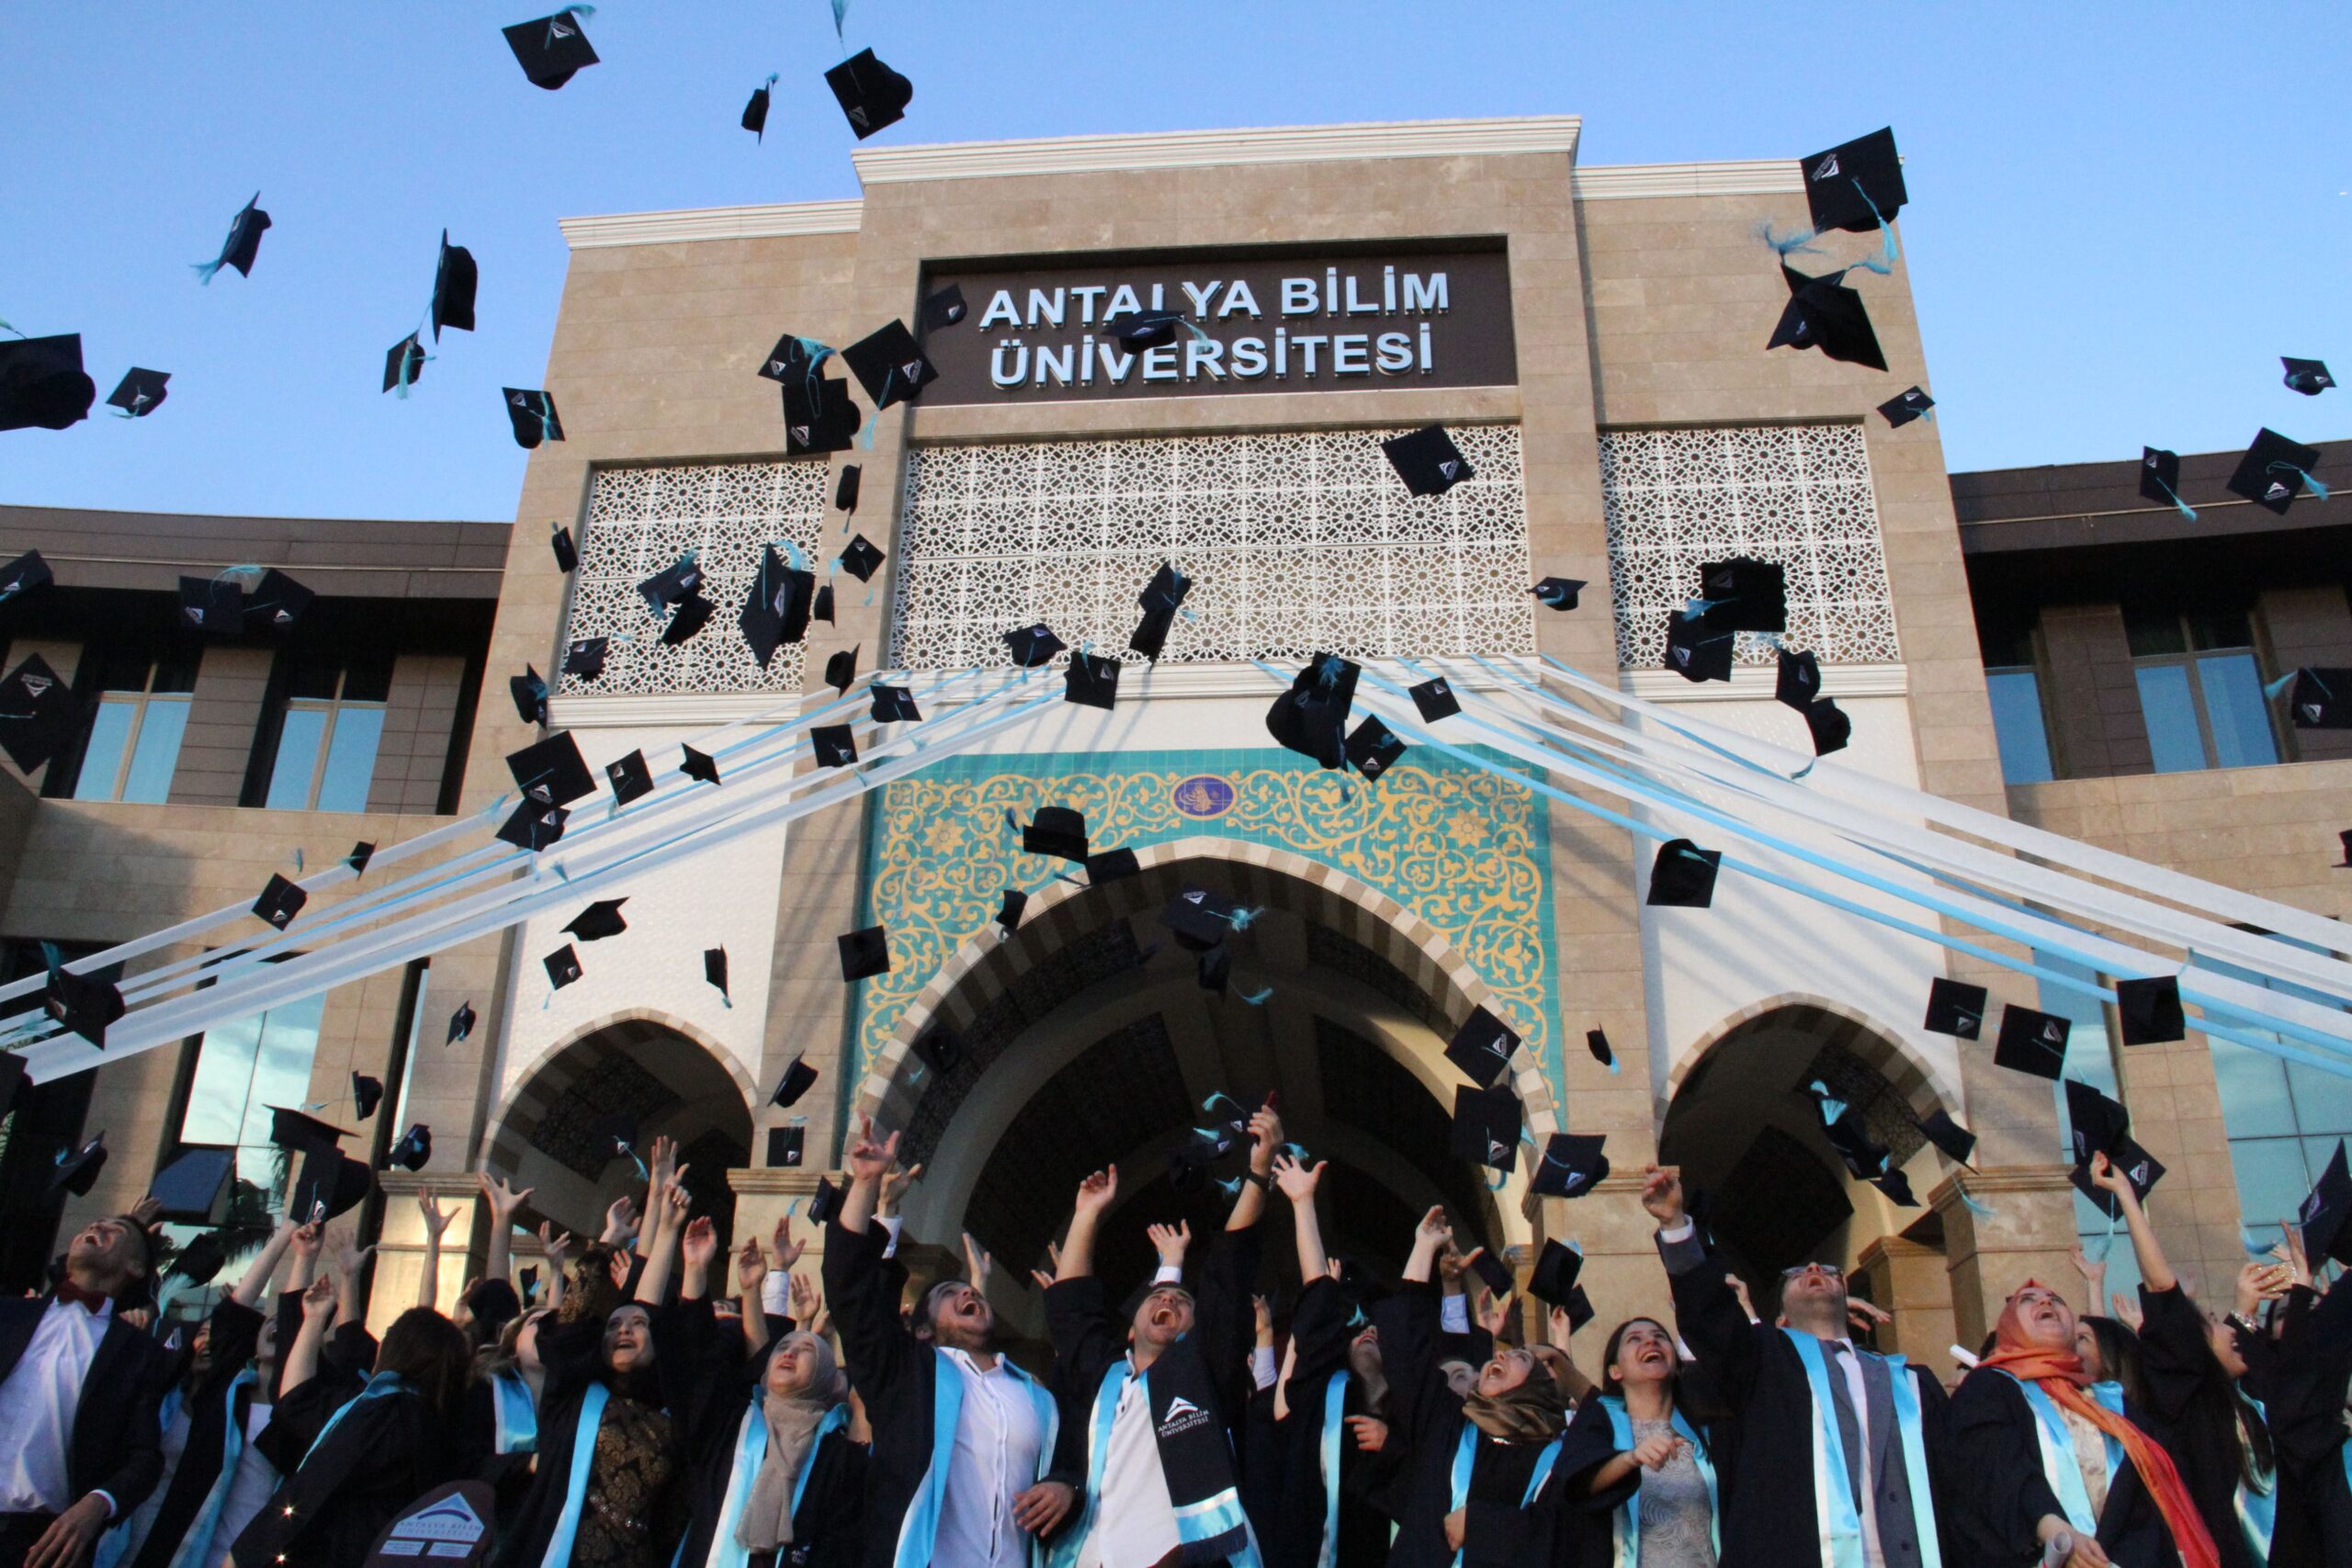 antalyabilim universitesi find and study 9 scaled - Antalya Bilim Universiteti